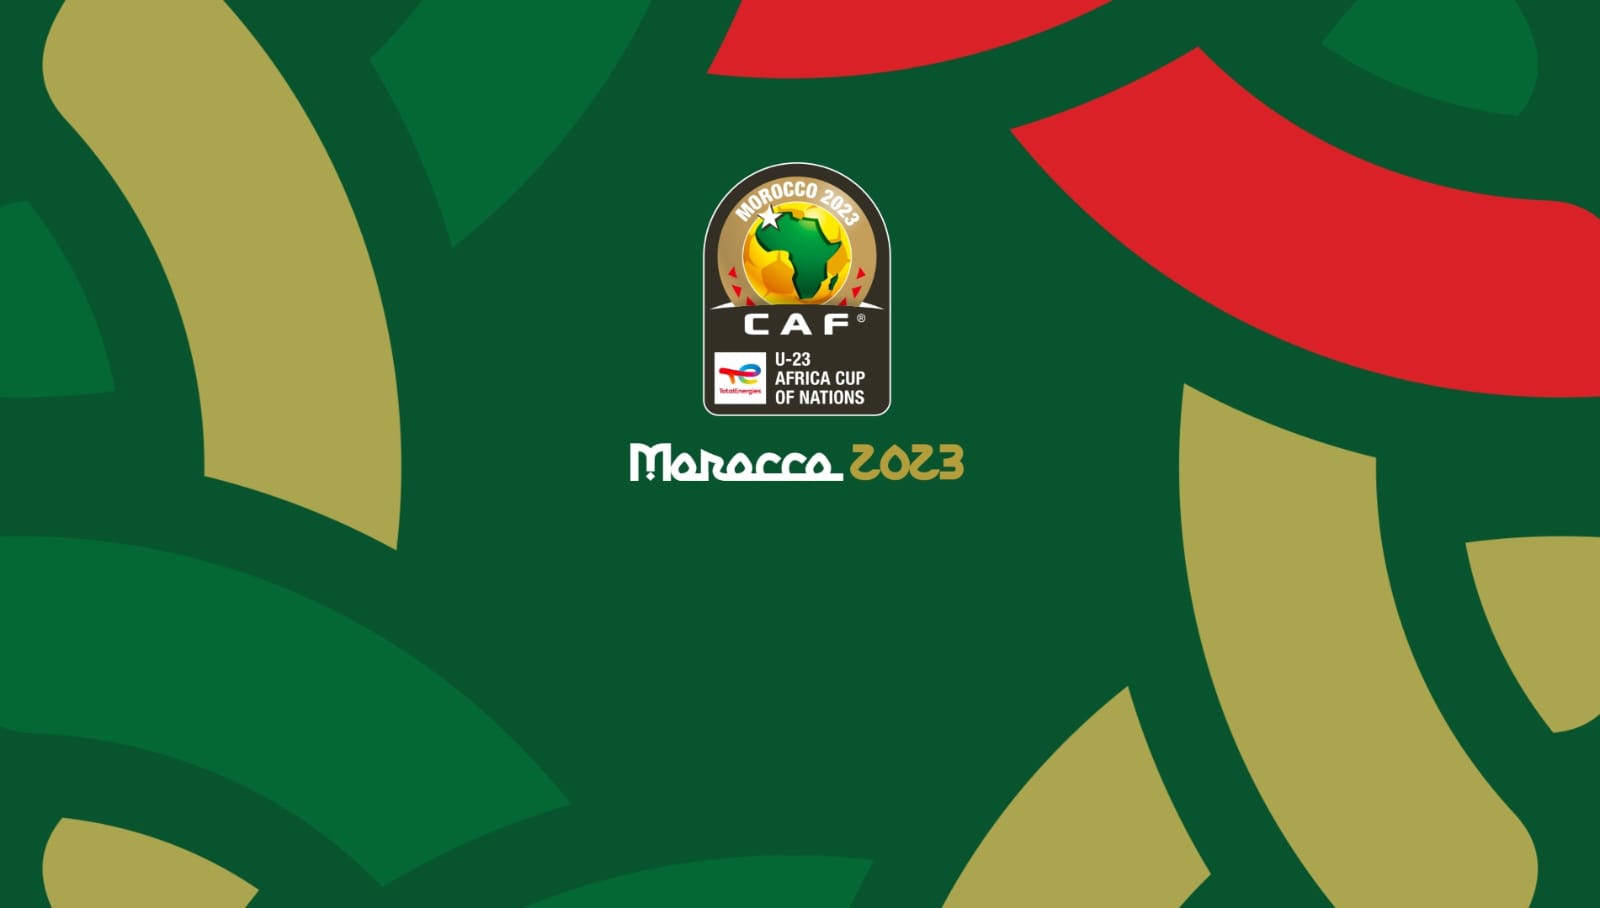 انطلاق بيع تذاكر مباريات كأس إفريقيا للأمم لأقل من 23 سنة